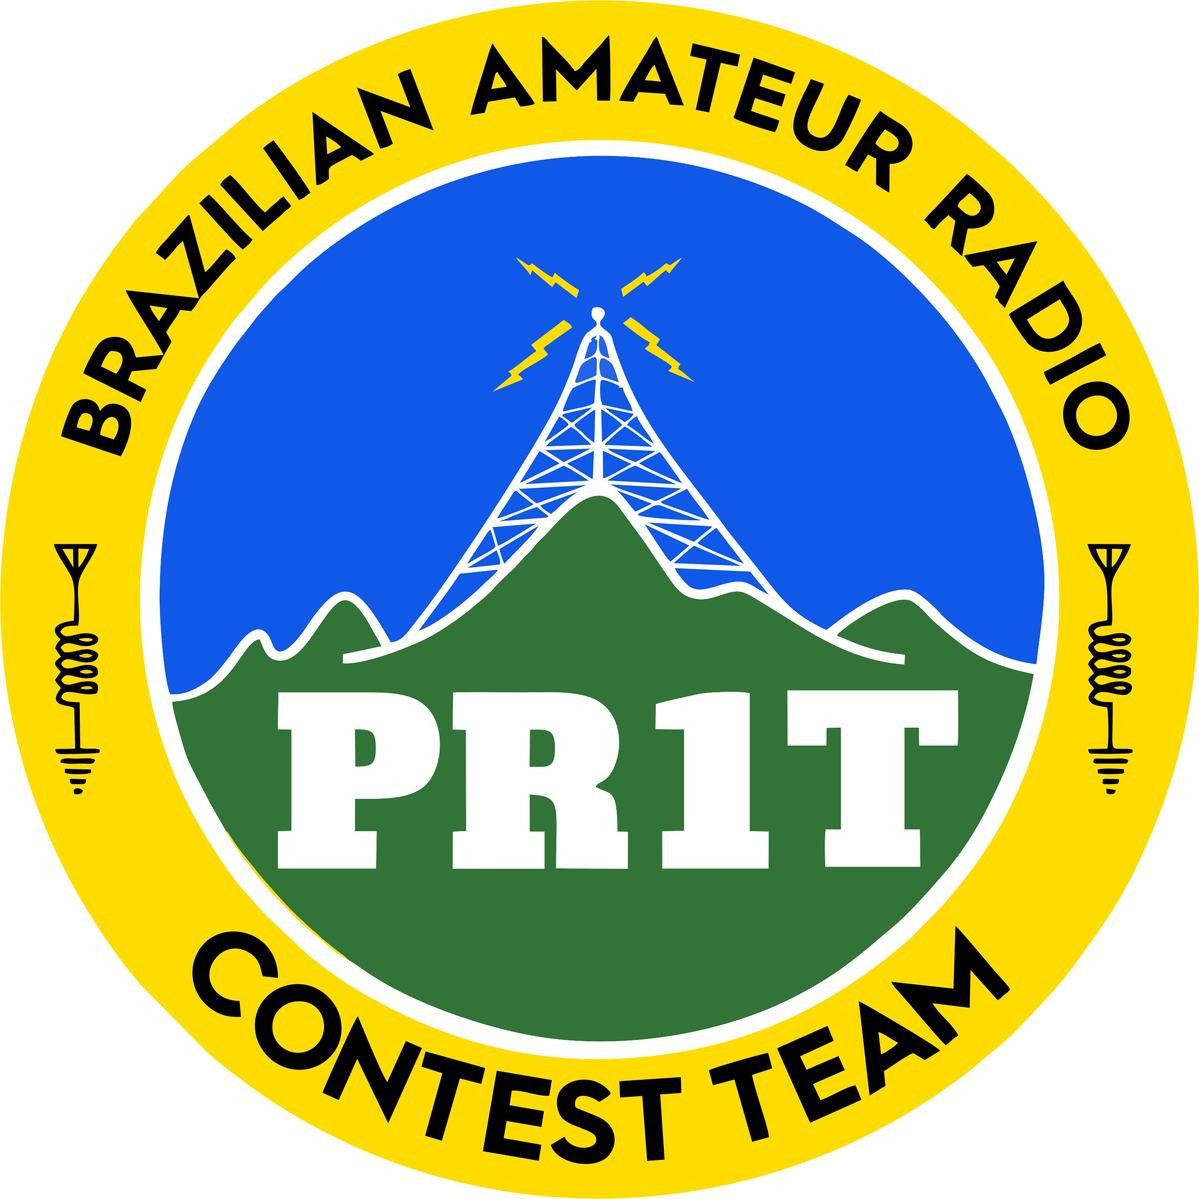 PR1T Inconfidencia, Brazil